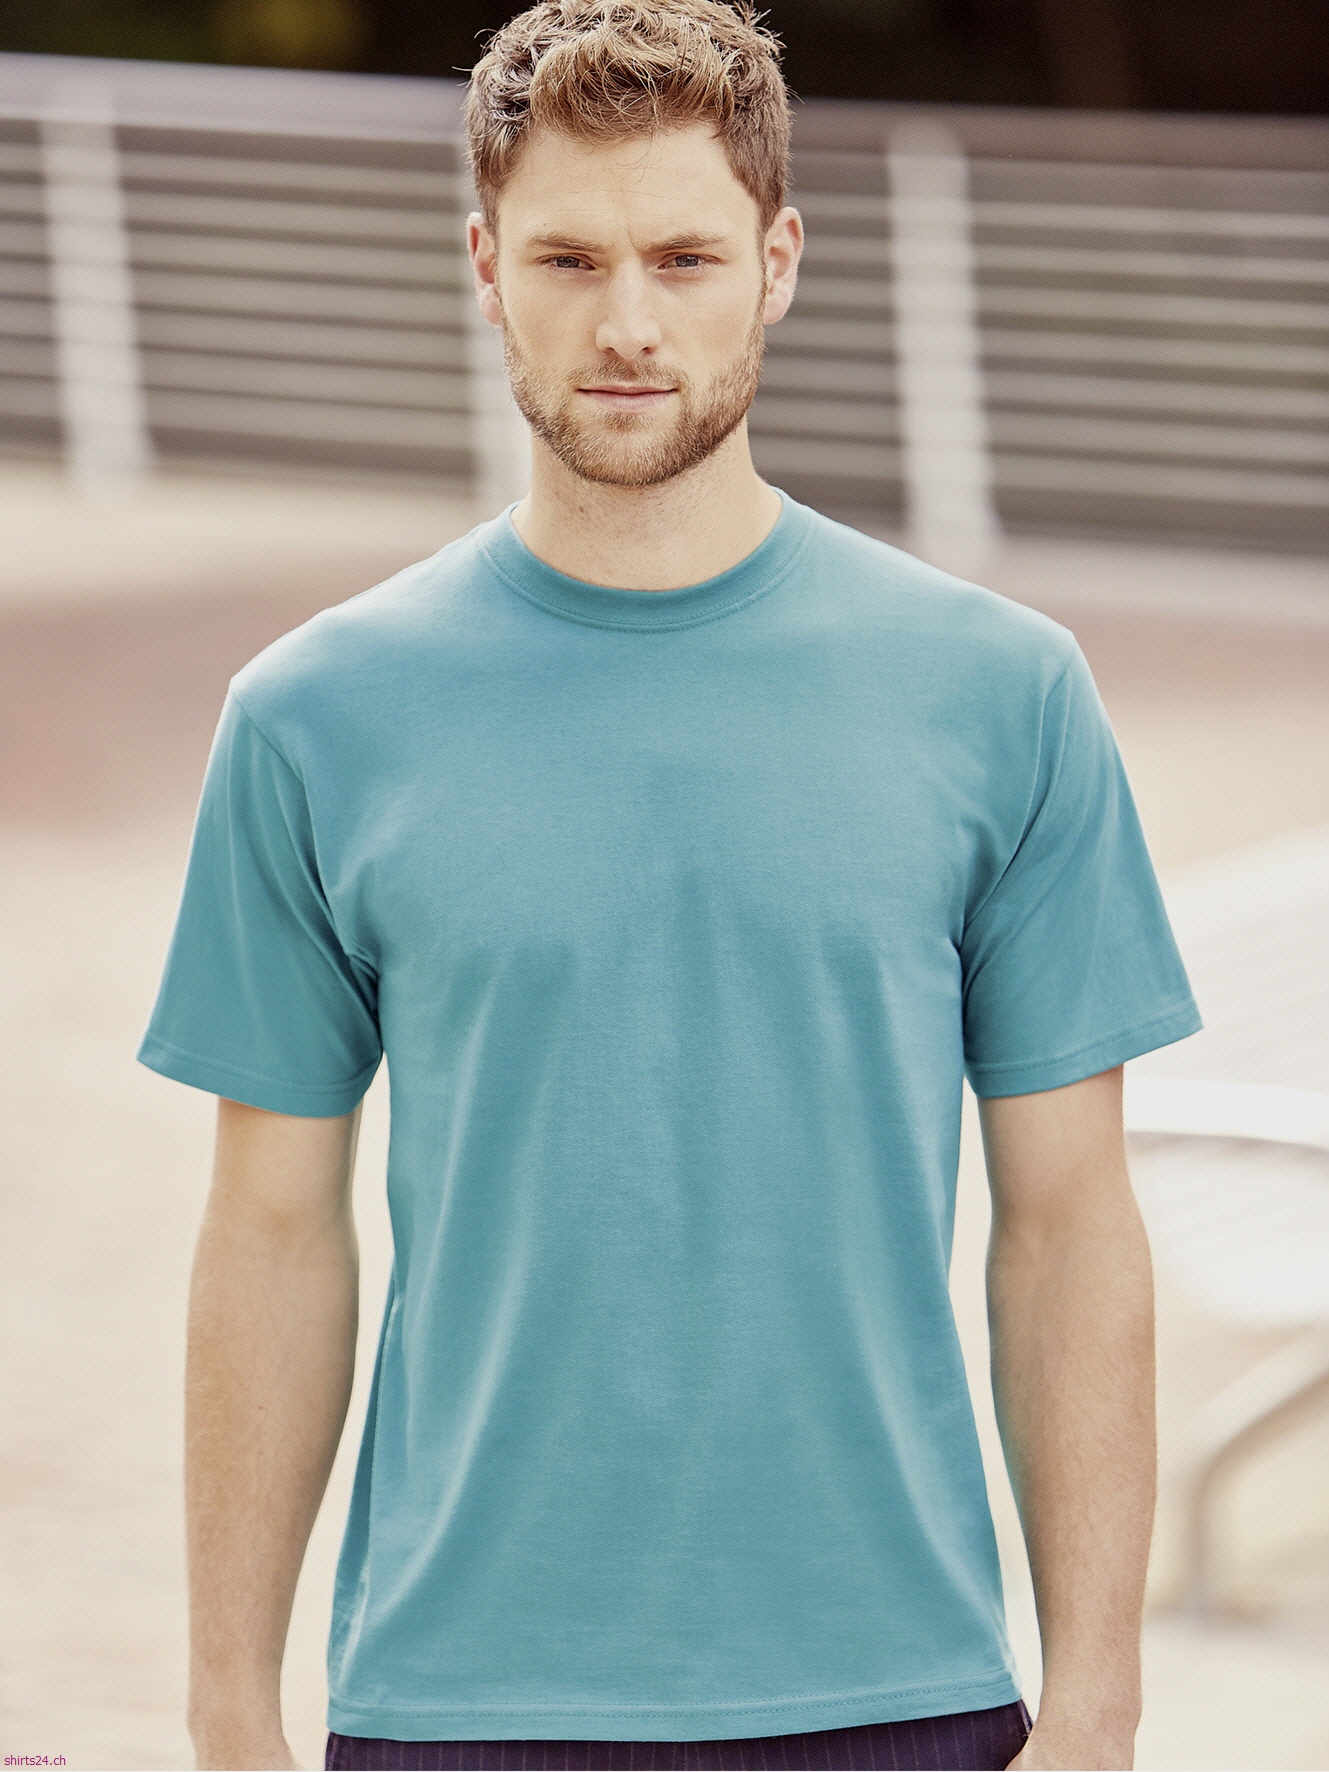 shirts24.ch günstige Blusen Hemden Fleece SoftShell etc. online kaufen